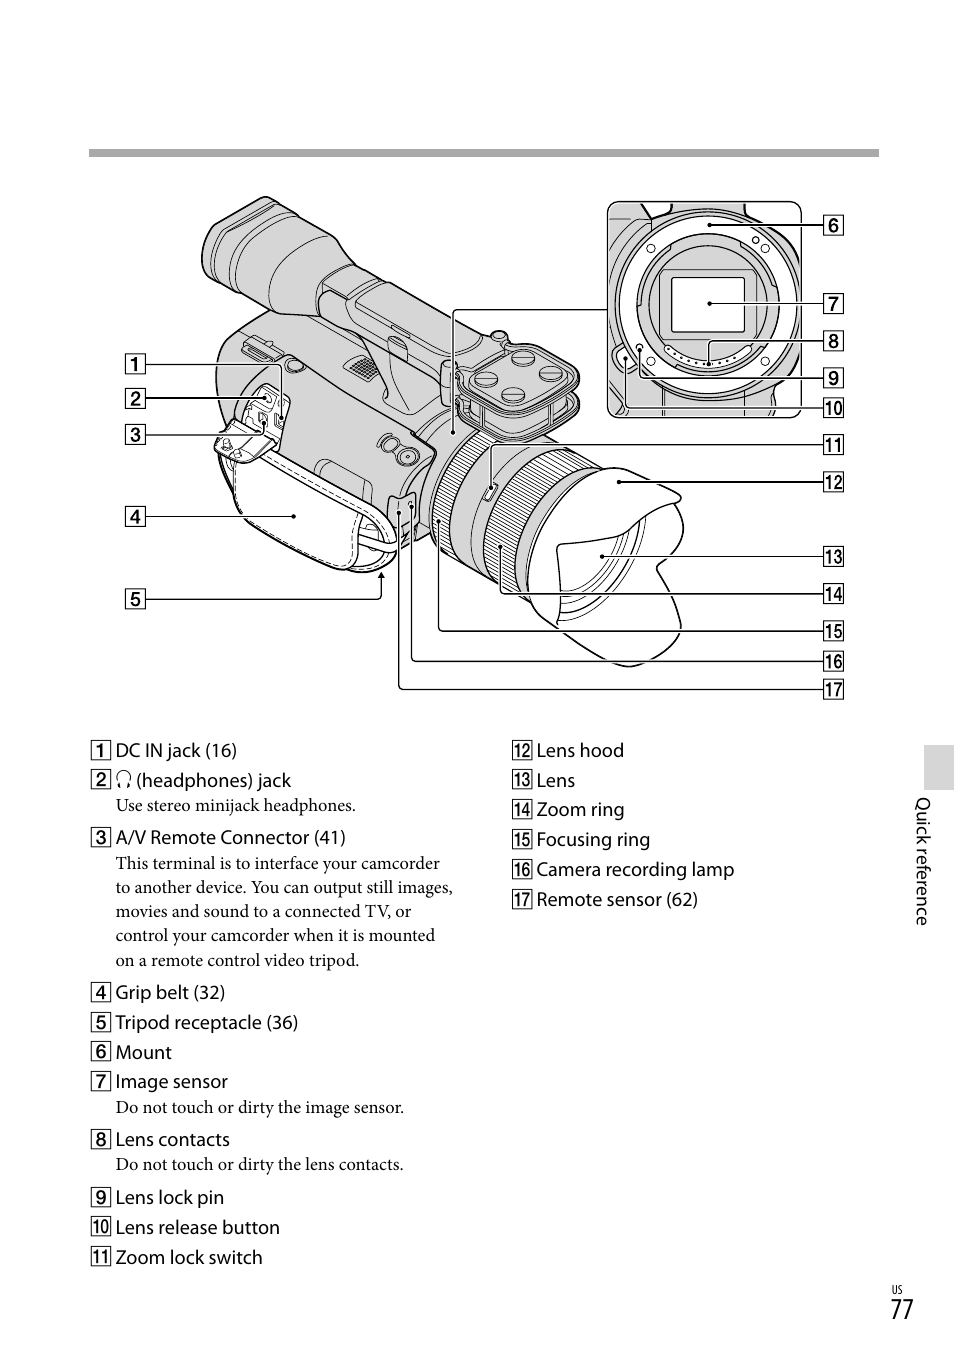 Sony NEX-VG20H Manuel d'utilisation | Page 77 / 163